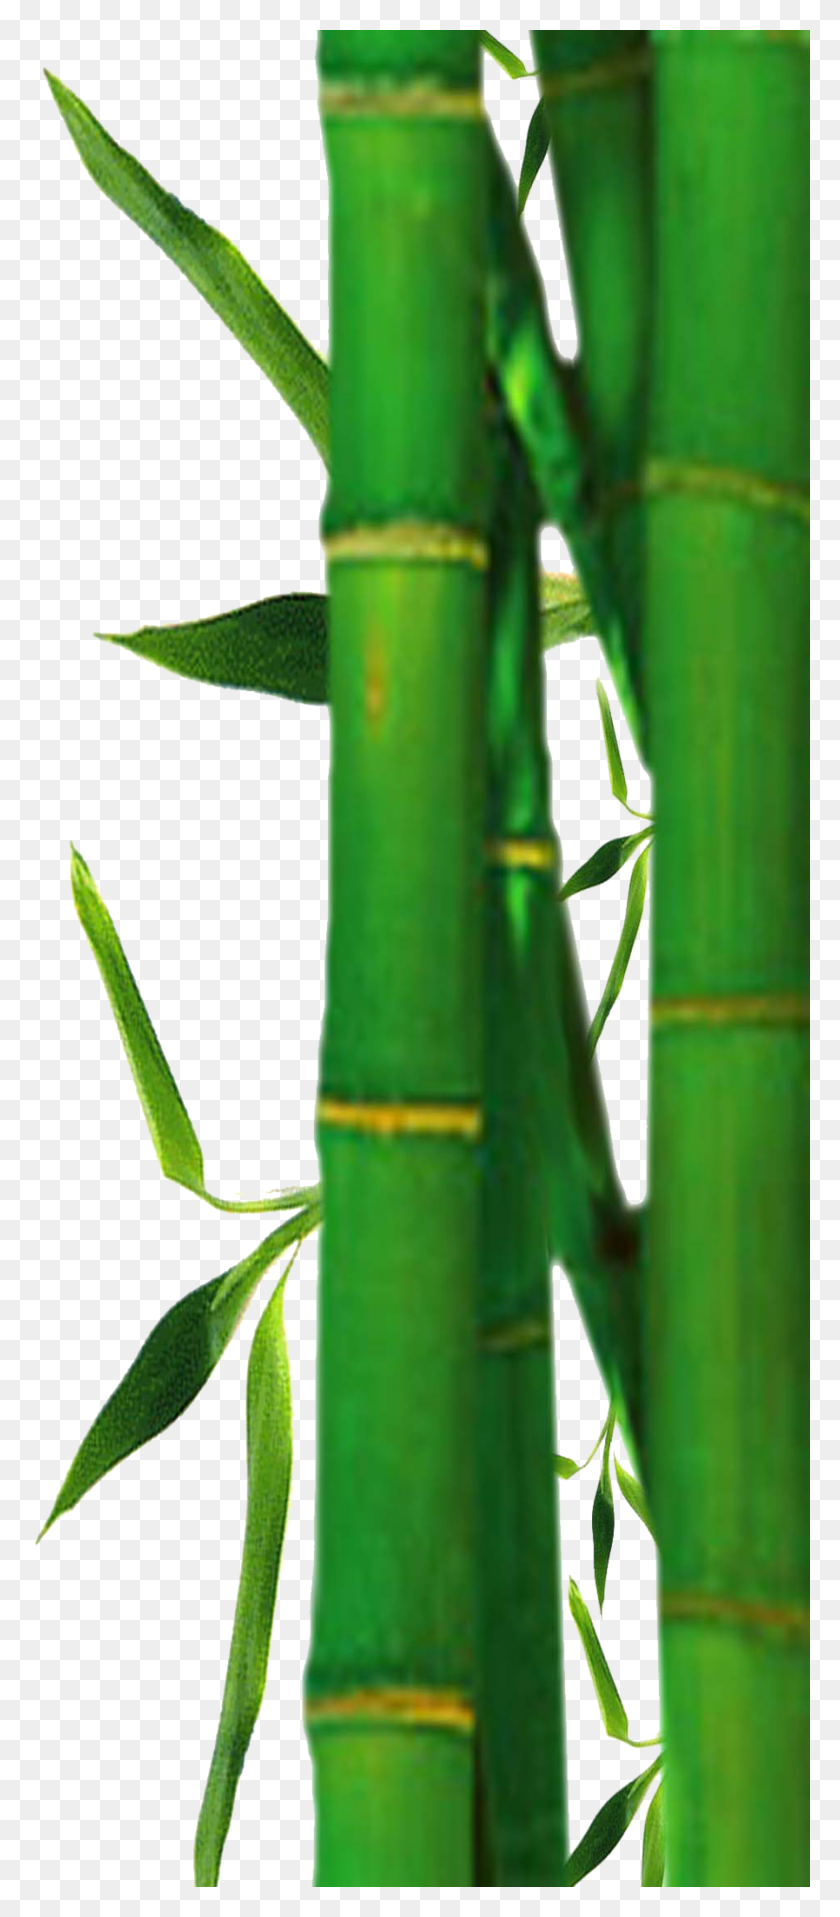 898x2138 Imágenes Prediseñadas De Árbol De Bambú Imágenes Prediseñadas Con Imágenes Imágenes Prediseñadas De Árbol De Bambú - Imágenes Prediseñadas De Bambú